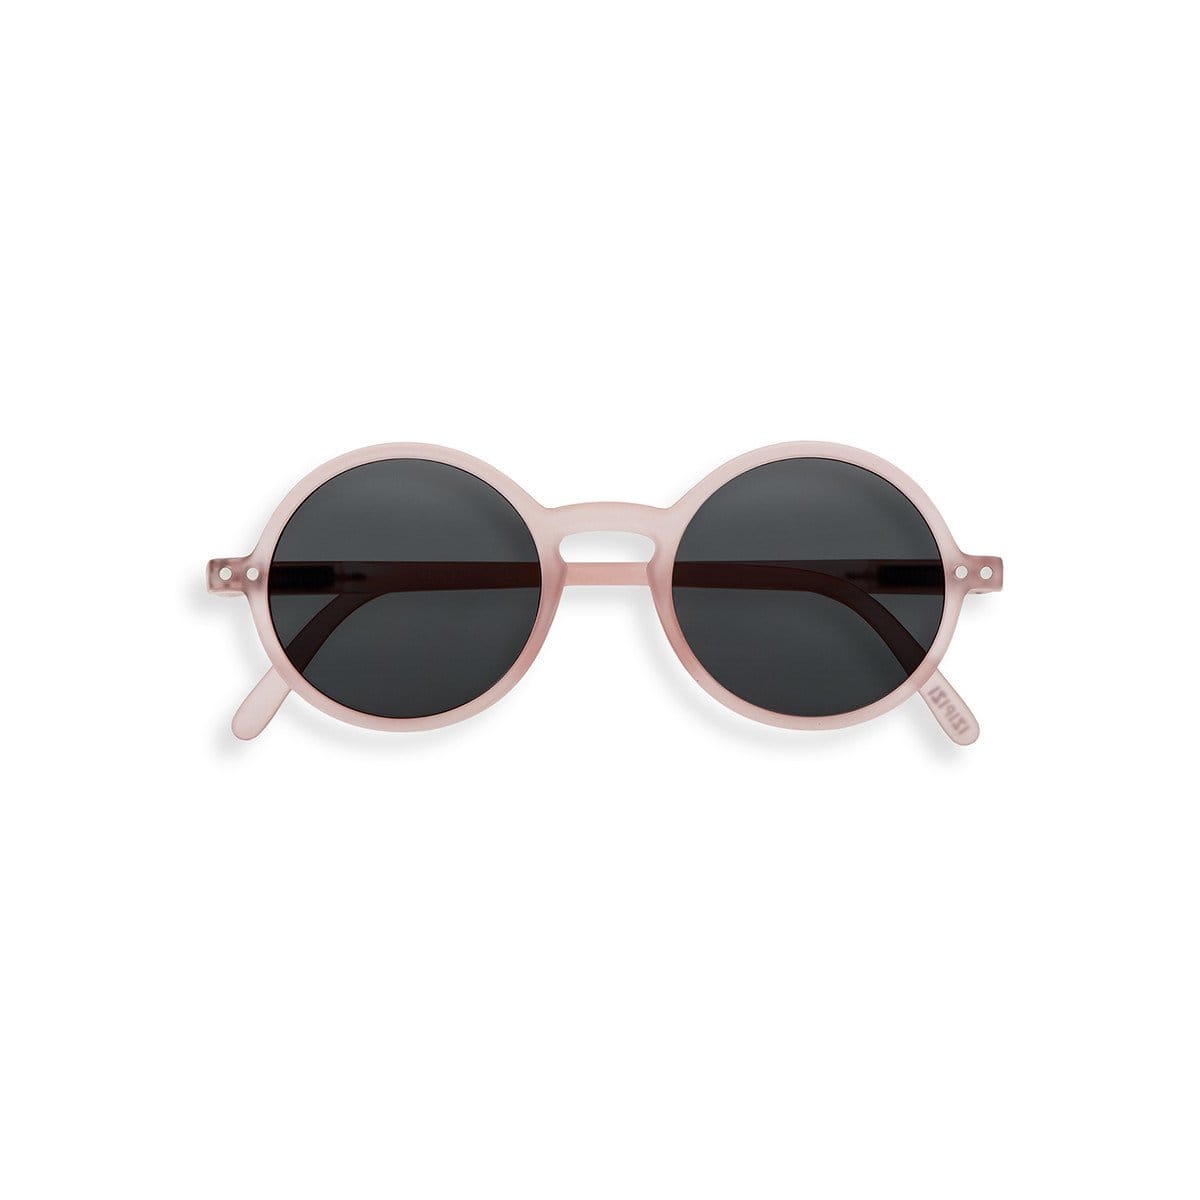 Izipizi Accessory Sunglasses Light Pink Izipizi Sun Junior Collection G - 5 to 10 years